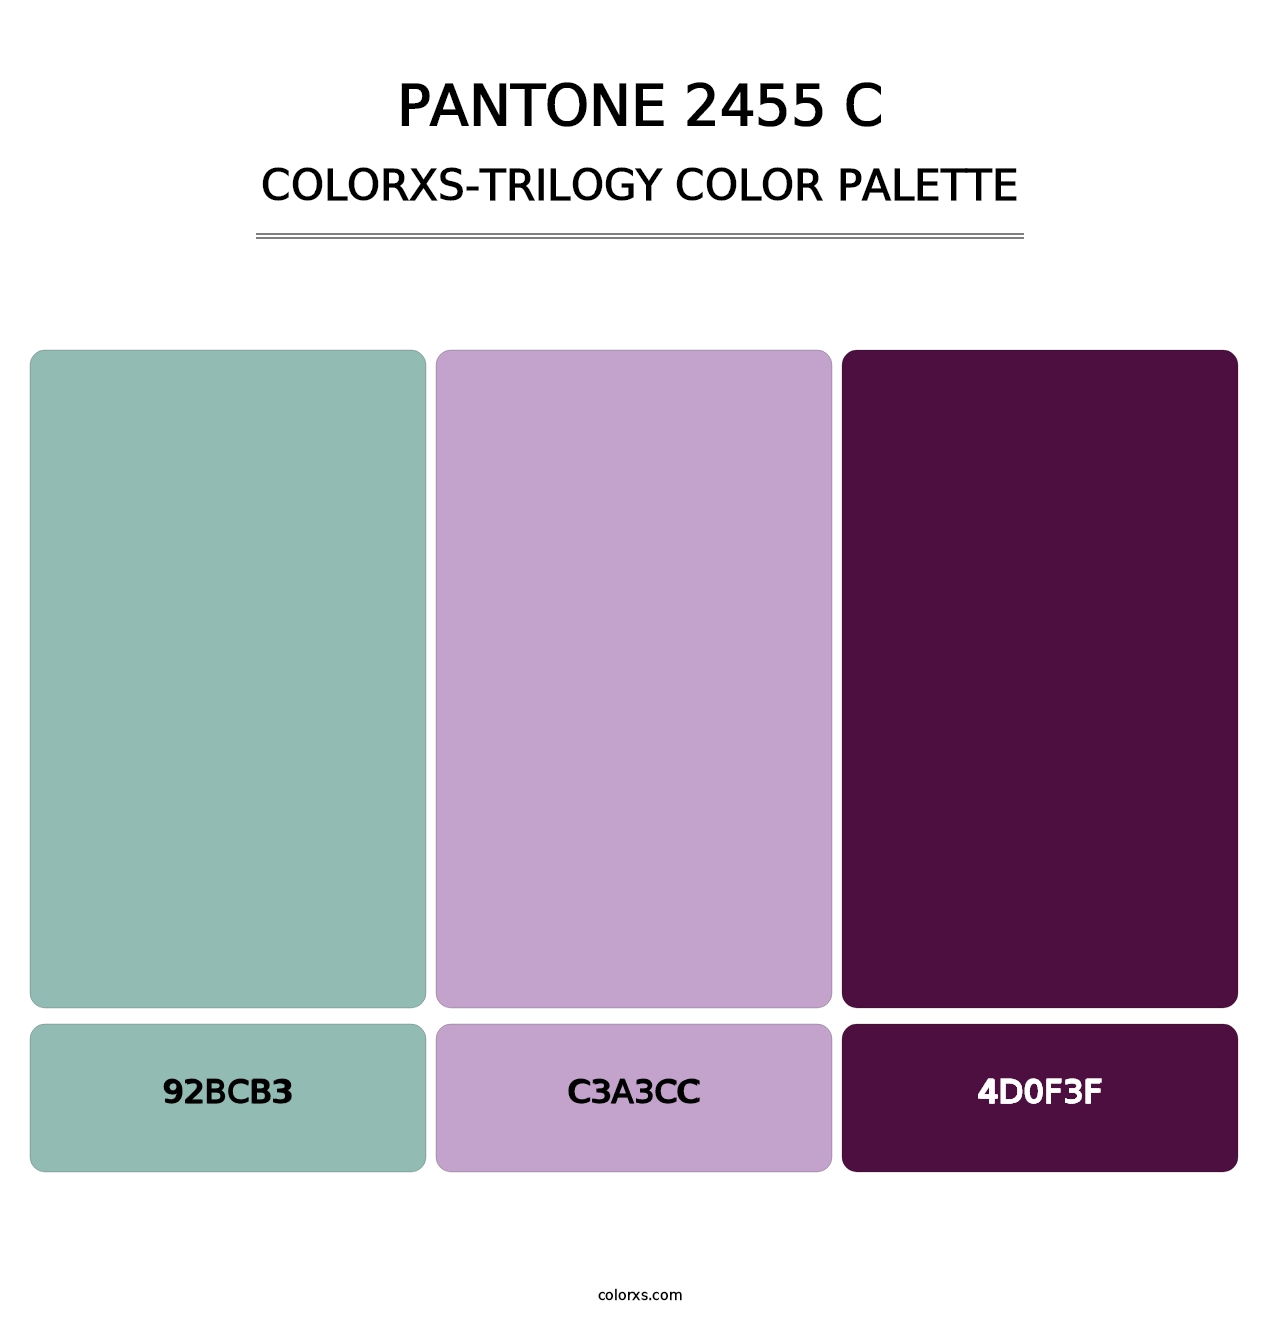 PANTONE 2455 C - Colorxs Trilogy Palette